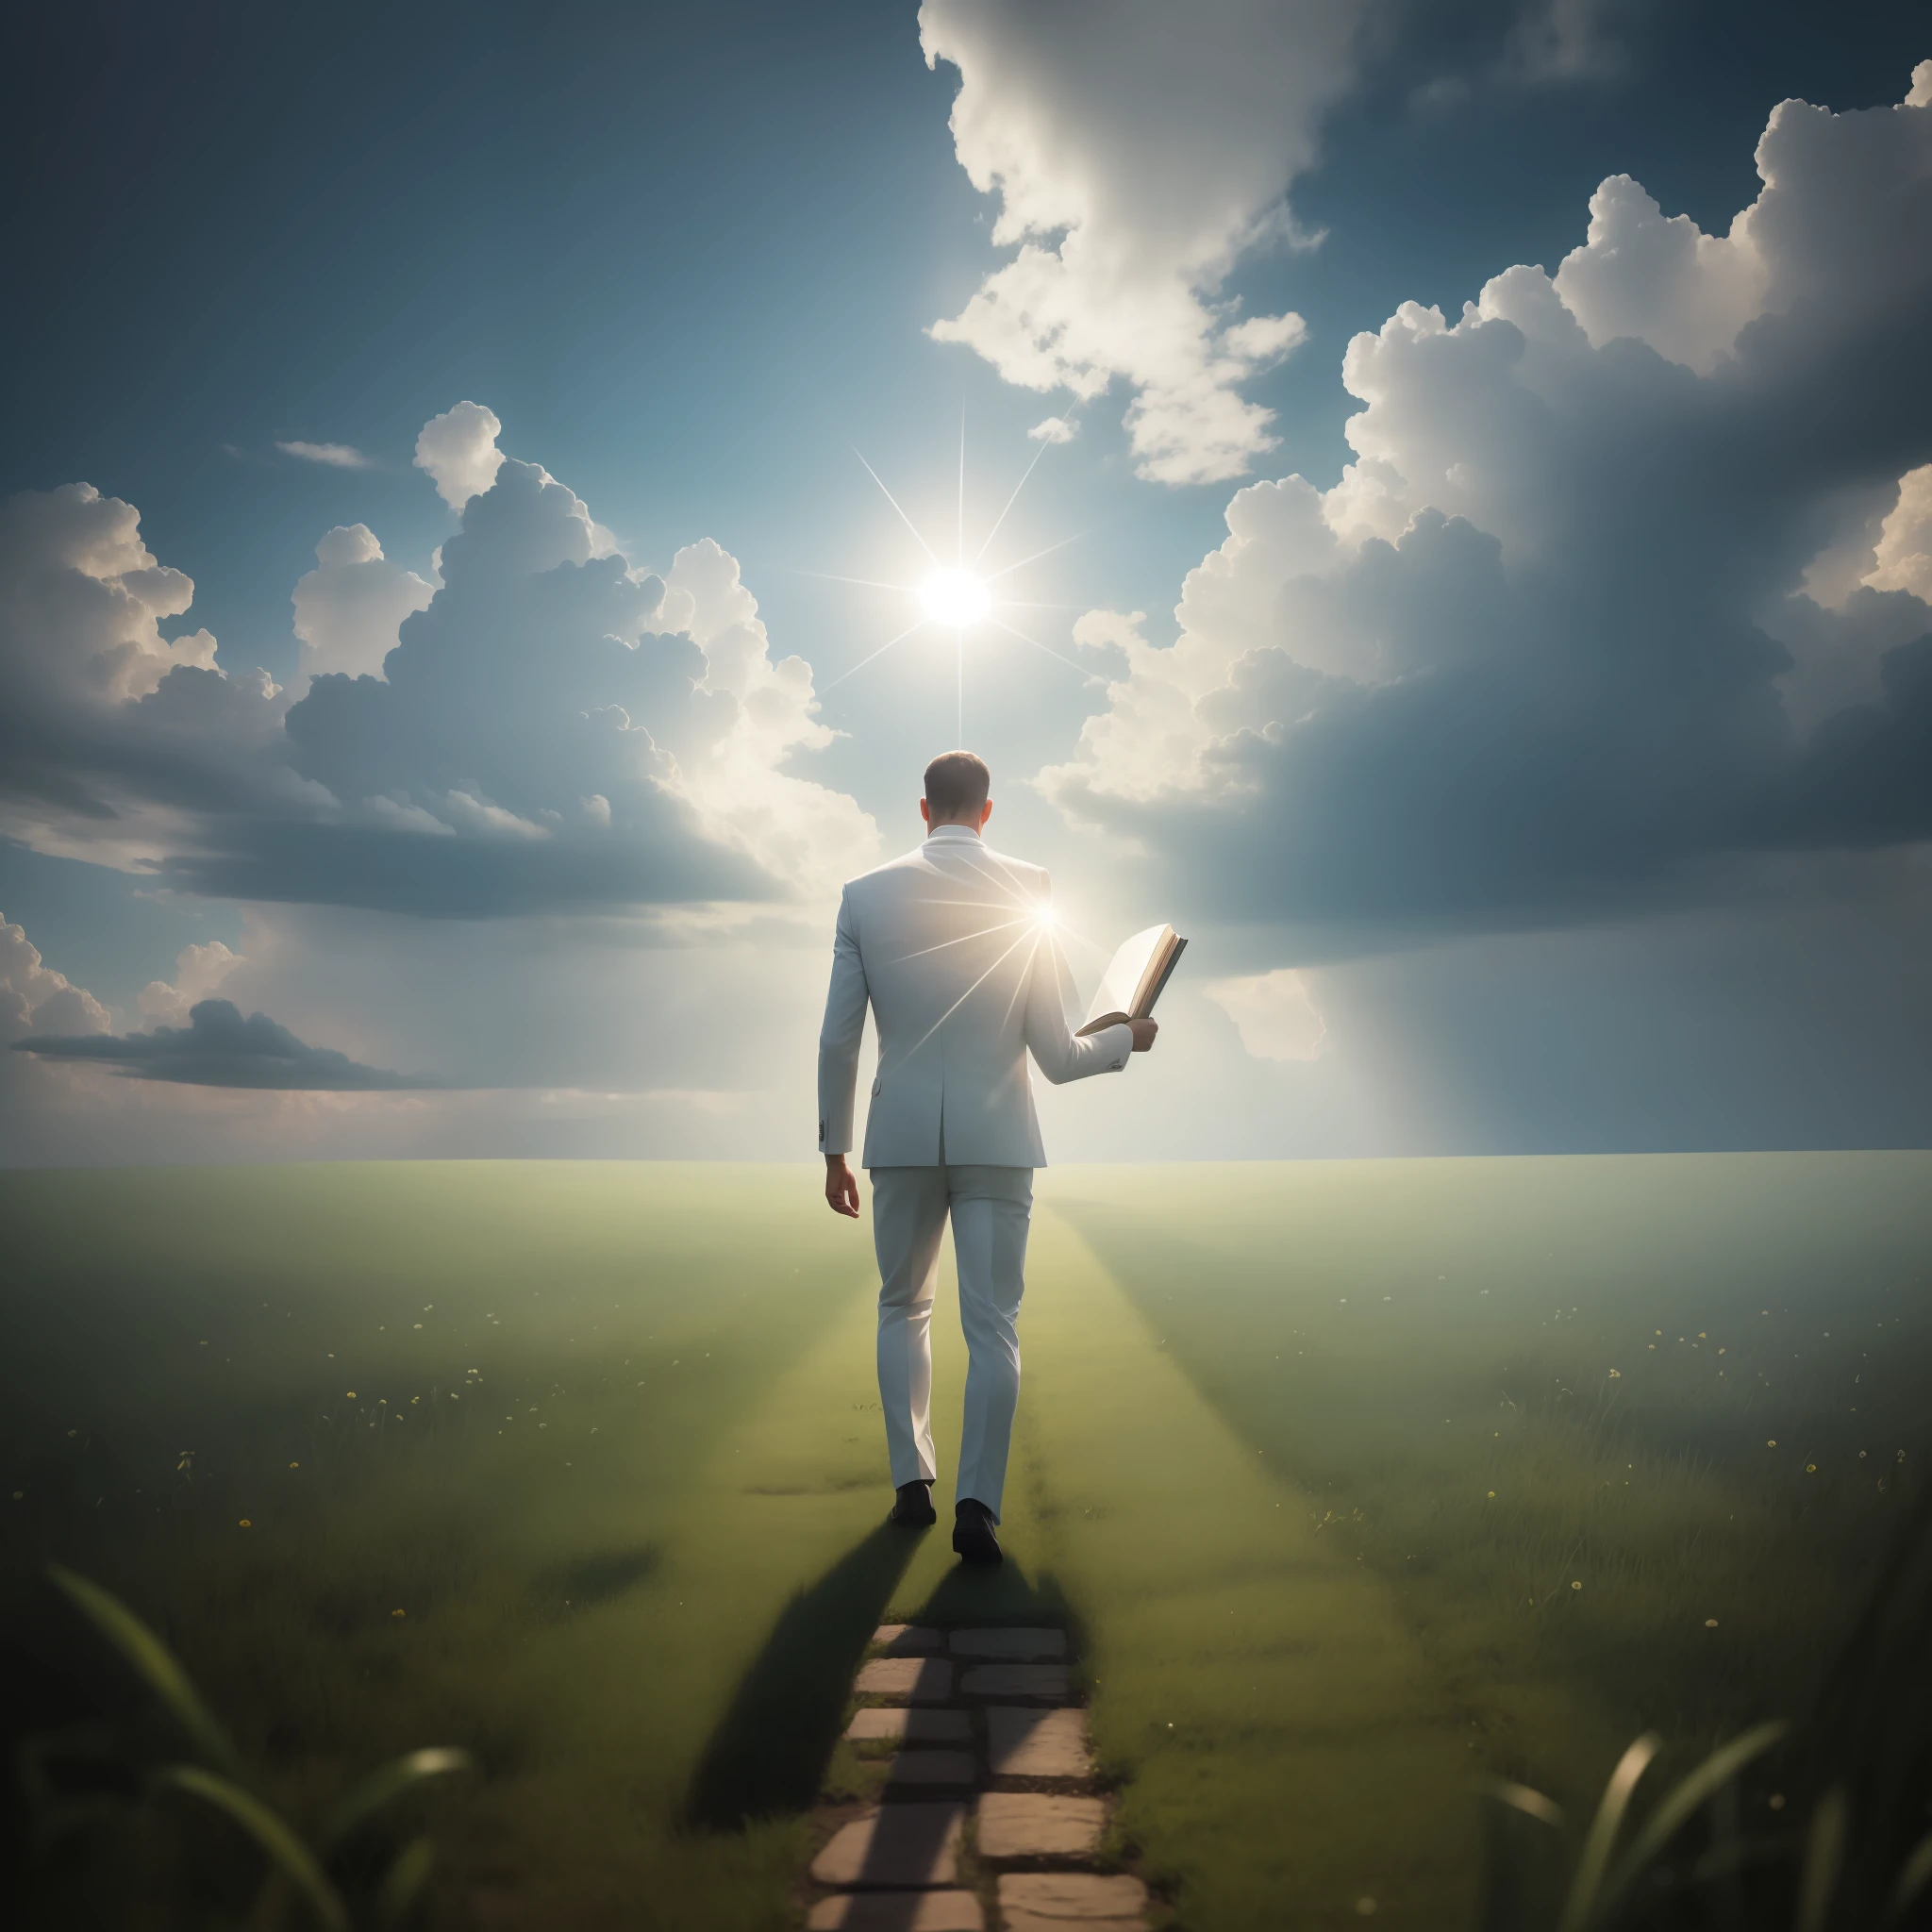 天国へ向かって歩く男, 聖書を手に, 一人で, 芝生, 曇り空, 空から強い白い光が来る, プリズム効果, 非常に詳細な, 最高品質, 8k